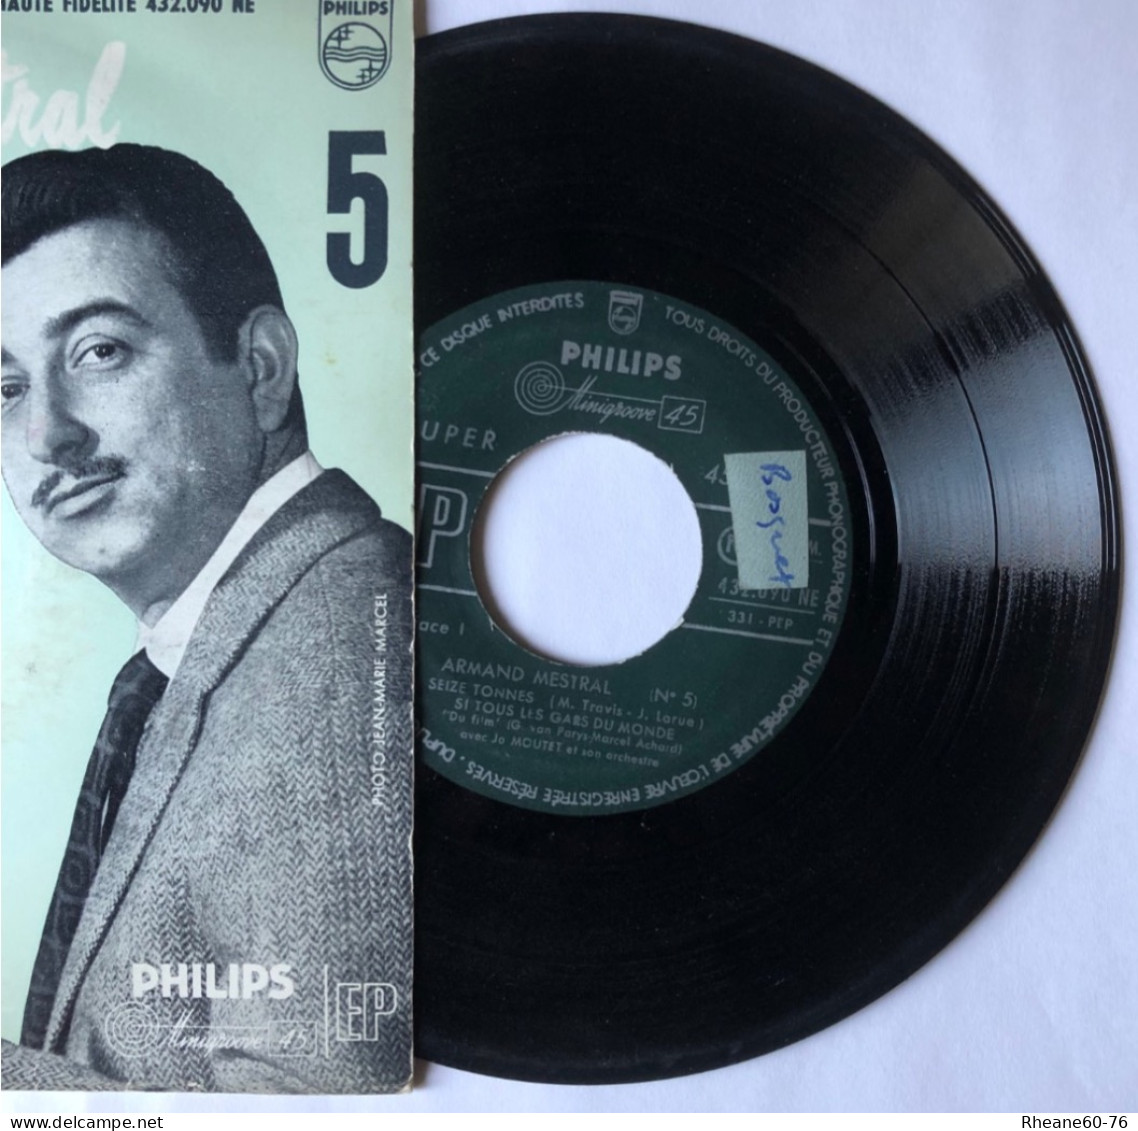 Philips 432.090 NE - 45T EP - Armand Mestral Avec Jo Moutet Et Son Orchestre - Microsillon Médium Haute Fidélité - Special Formats